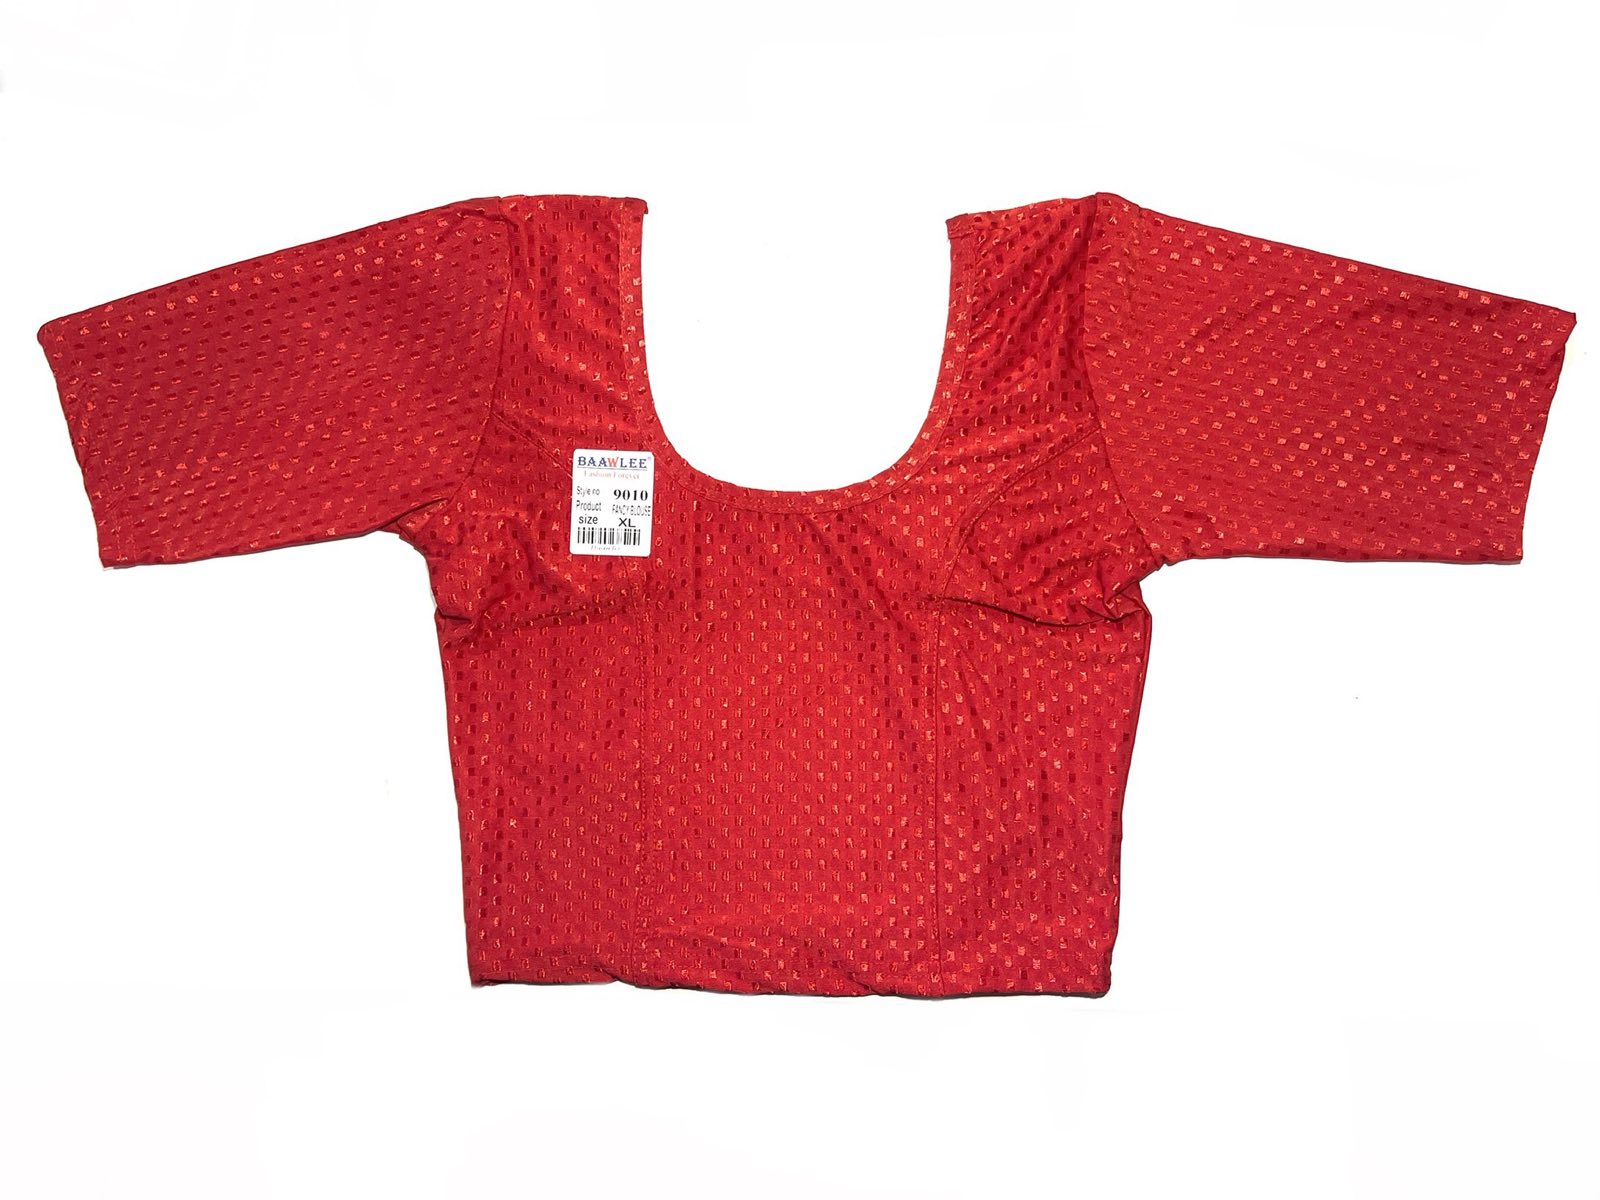 ЧОЛИ трикотажная блуза под сари, цвет КРАСНЫЙ, размер XL, Baawlee, 1 шт.